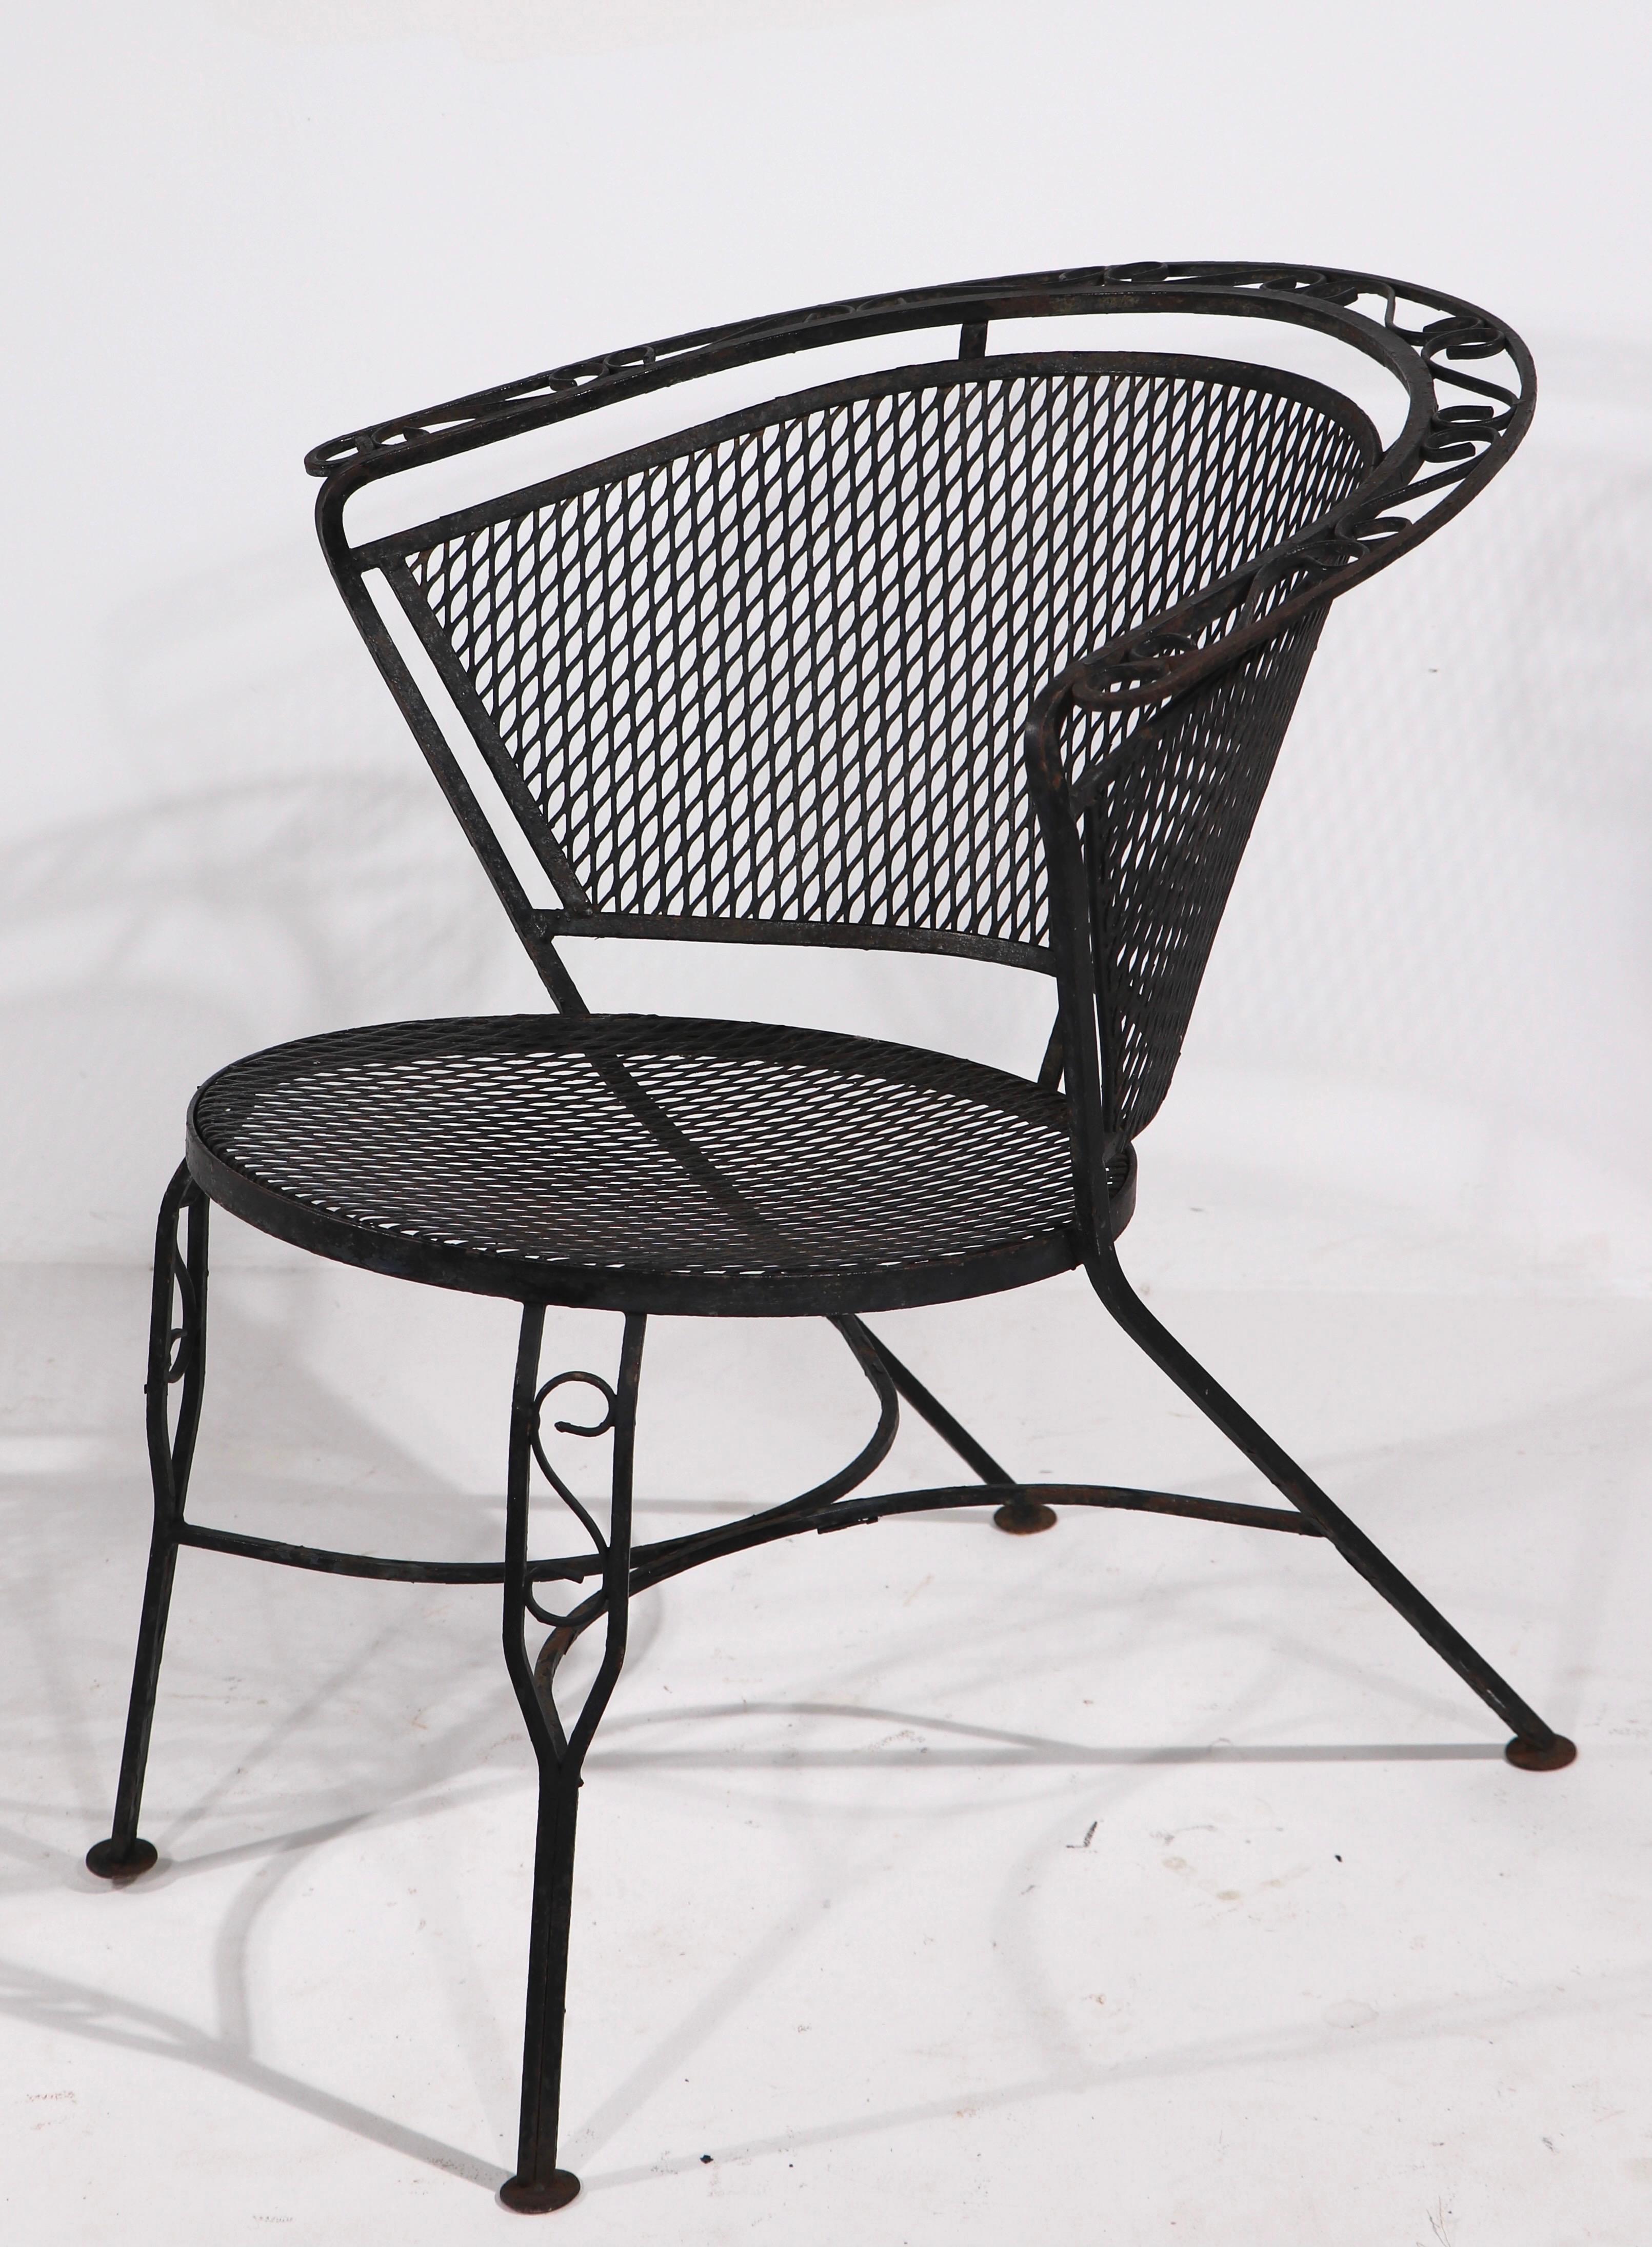 Schickes und stilvolles Paar schmiedeeiserner Garten-, Terrassen- und Poolsessel der Marke Salterini. Die Stühle haben schmiedeeiserne Gestelle mit Sitzflächen und Rückenlehnen aus Metallgeflecht. Beide sind in gutem Originalzustand, frei von